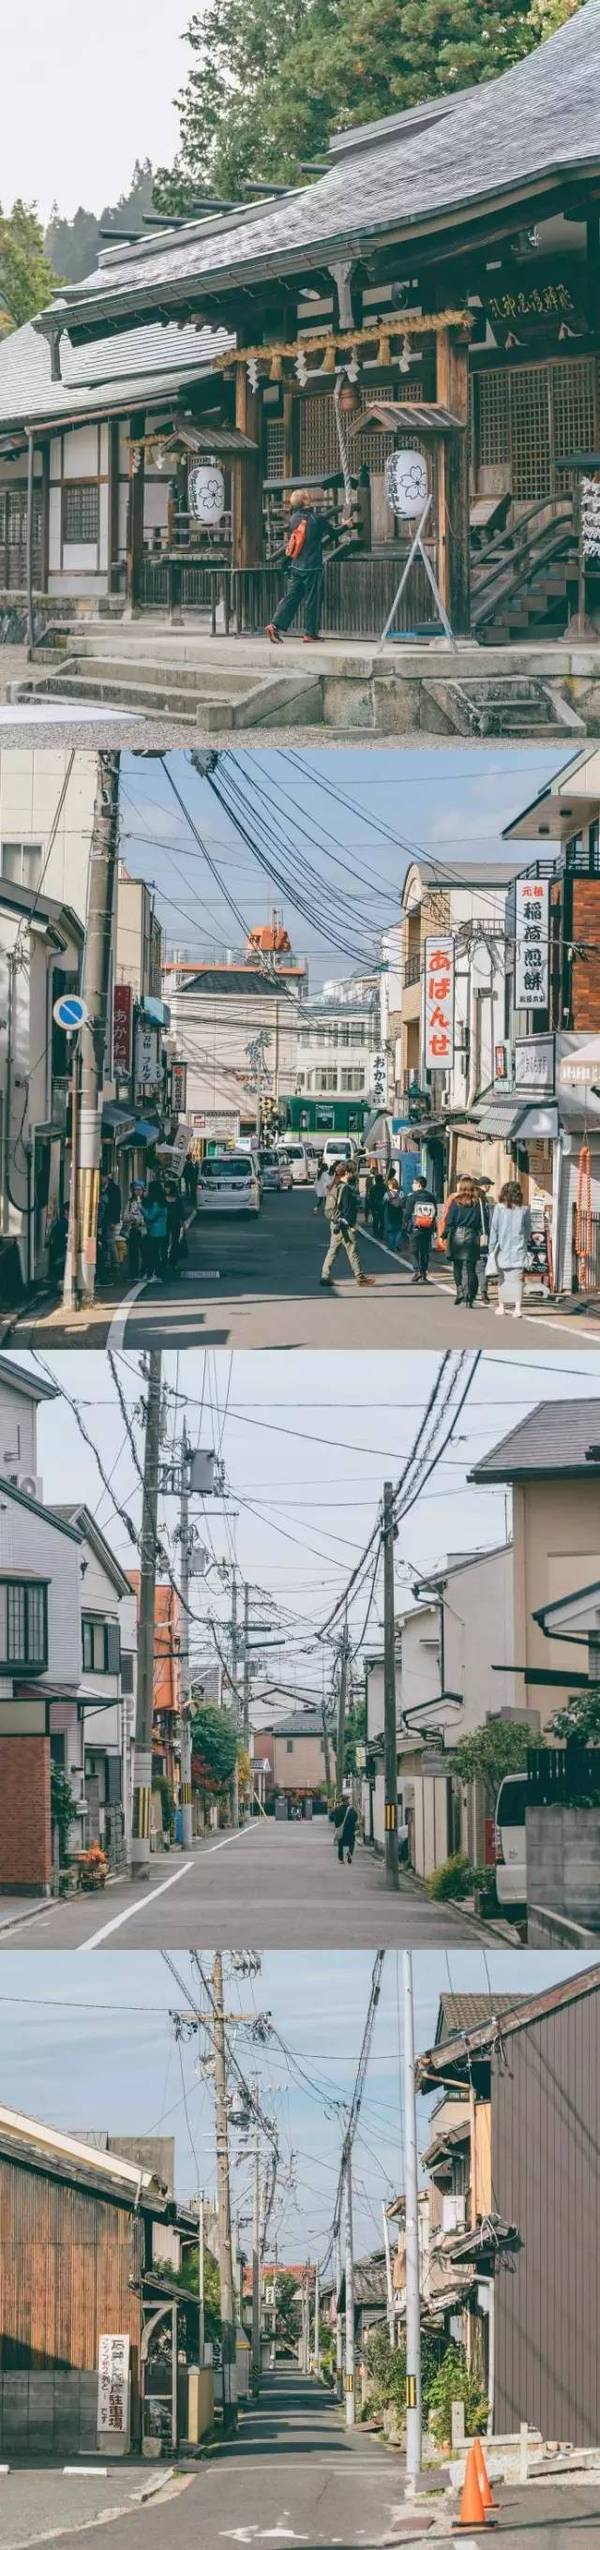 镜头下捕捉到的日本街头风景!